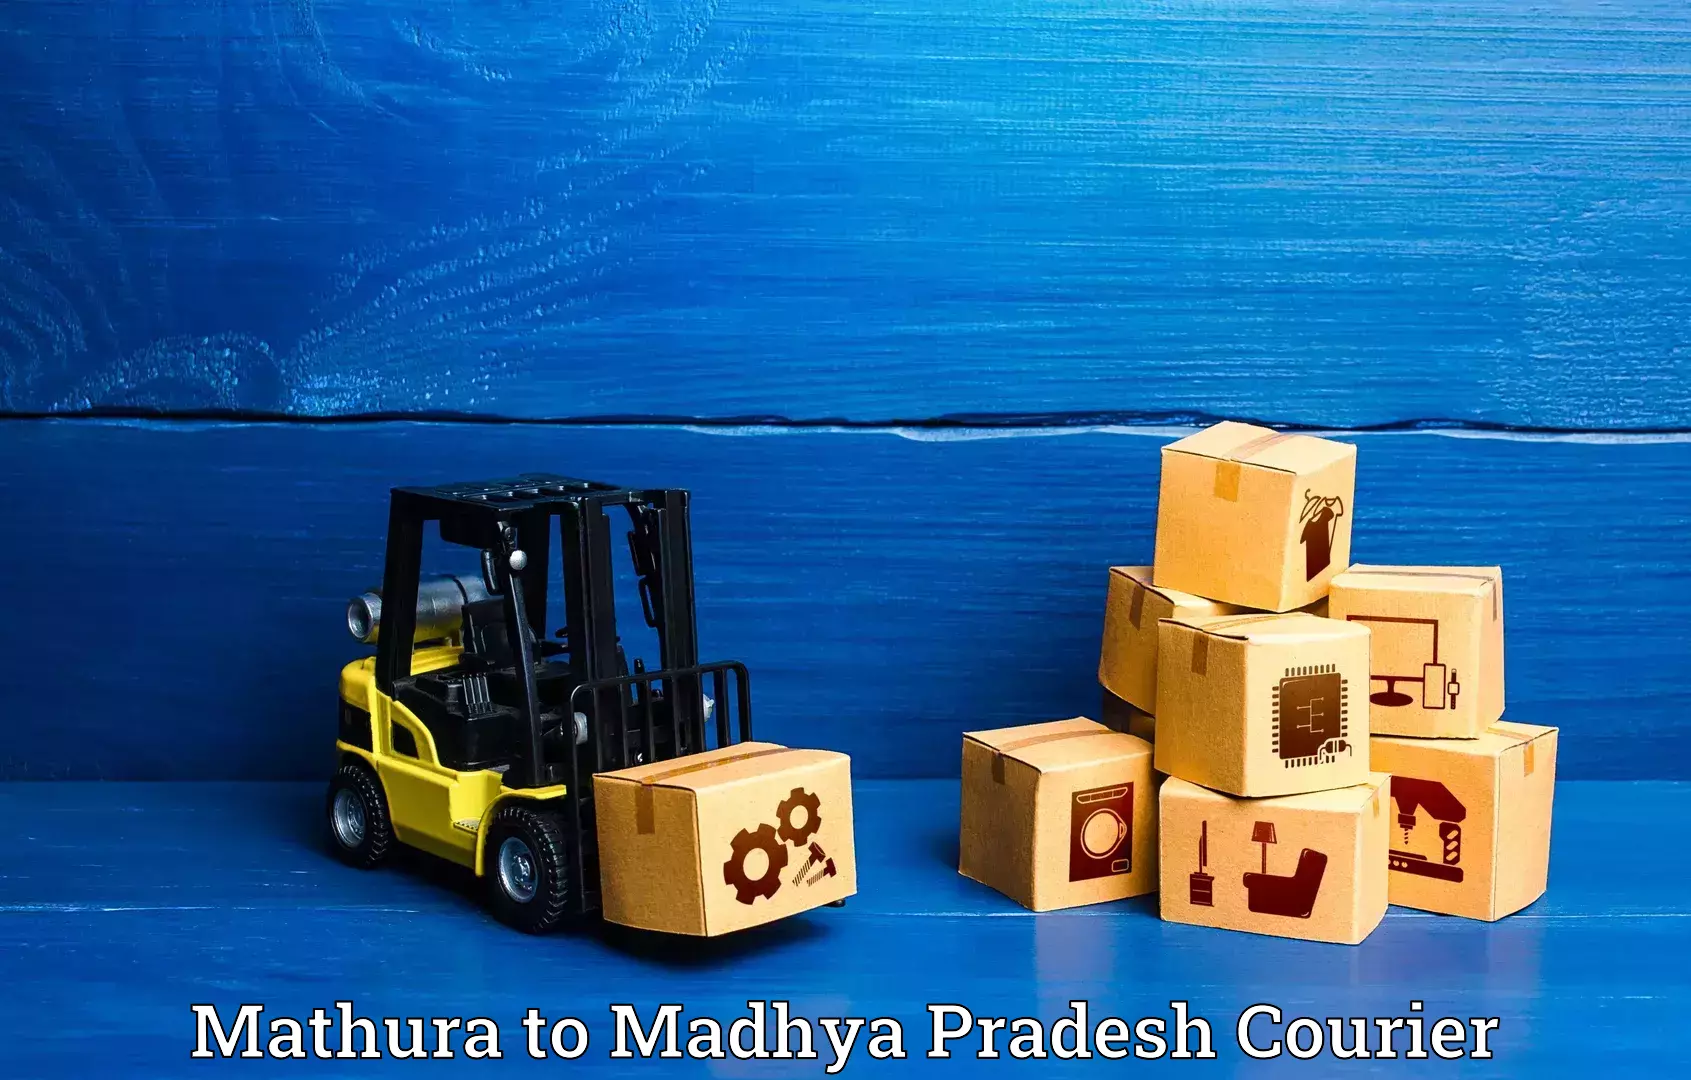 Luggage shipment specialists Mathura to Amanganj